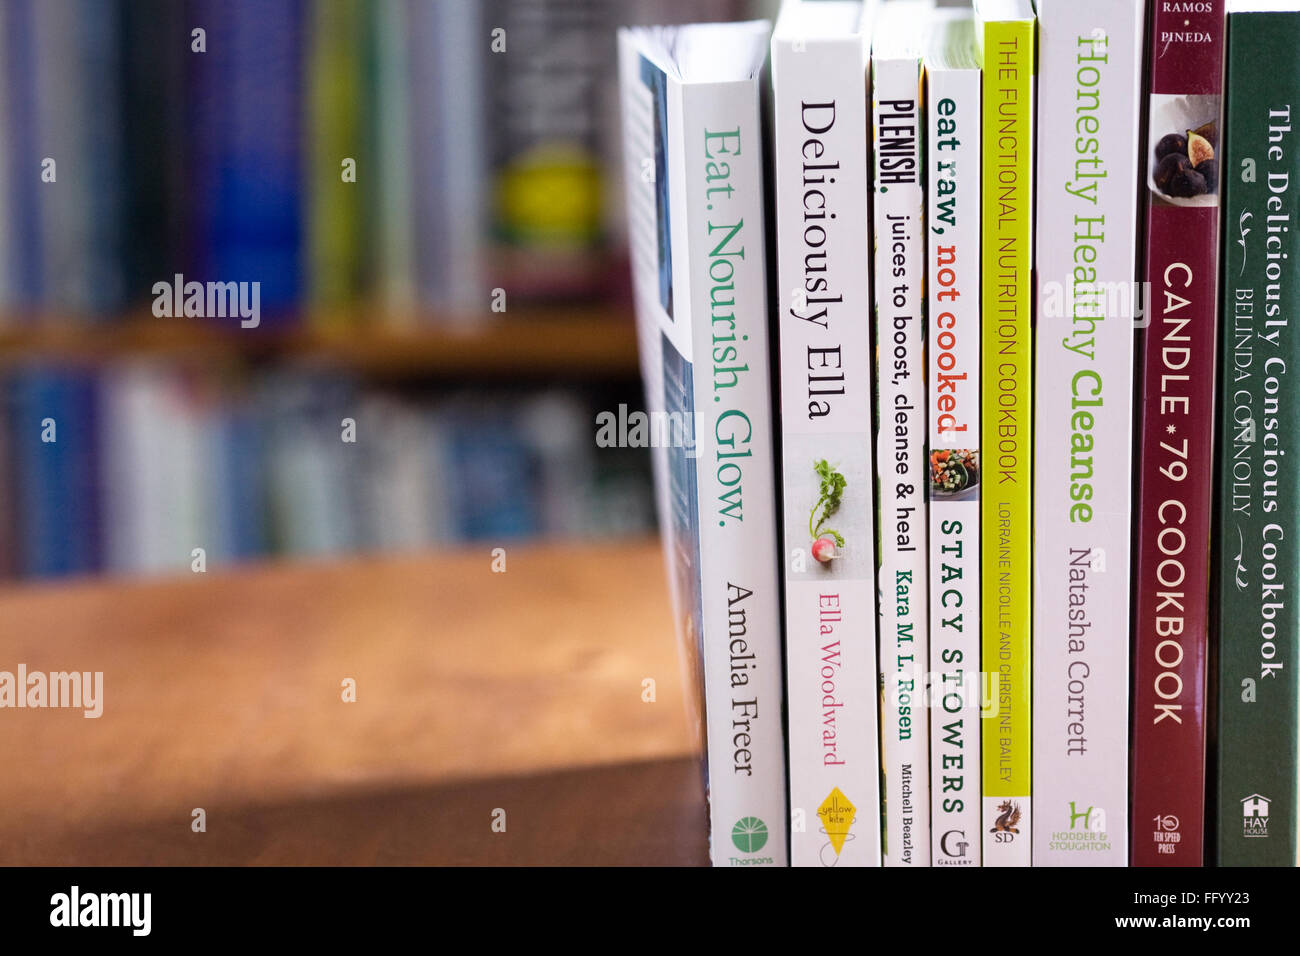 Libros de cocina comida sana en una mesa de madera. Foto de stock